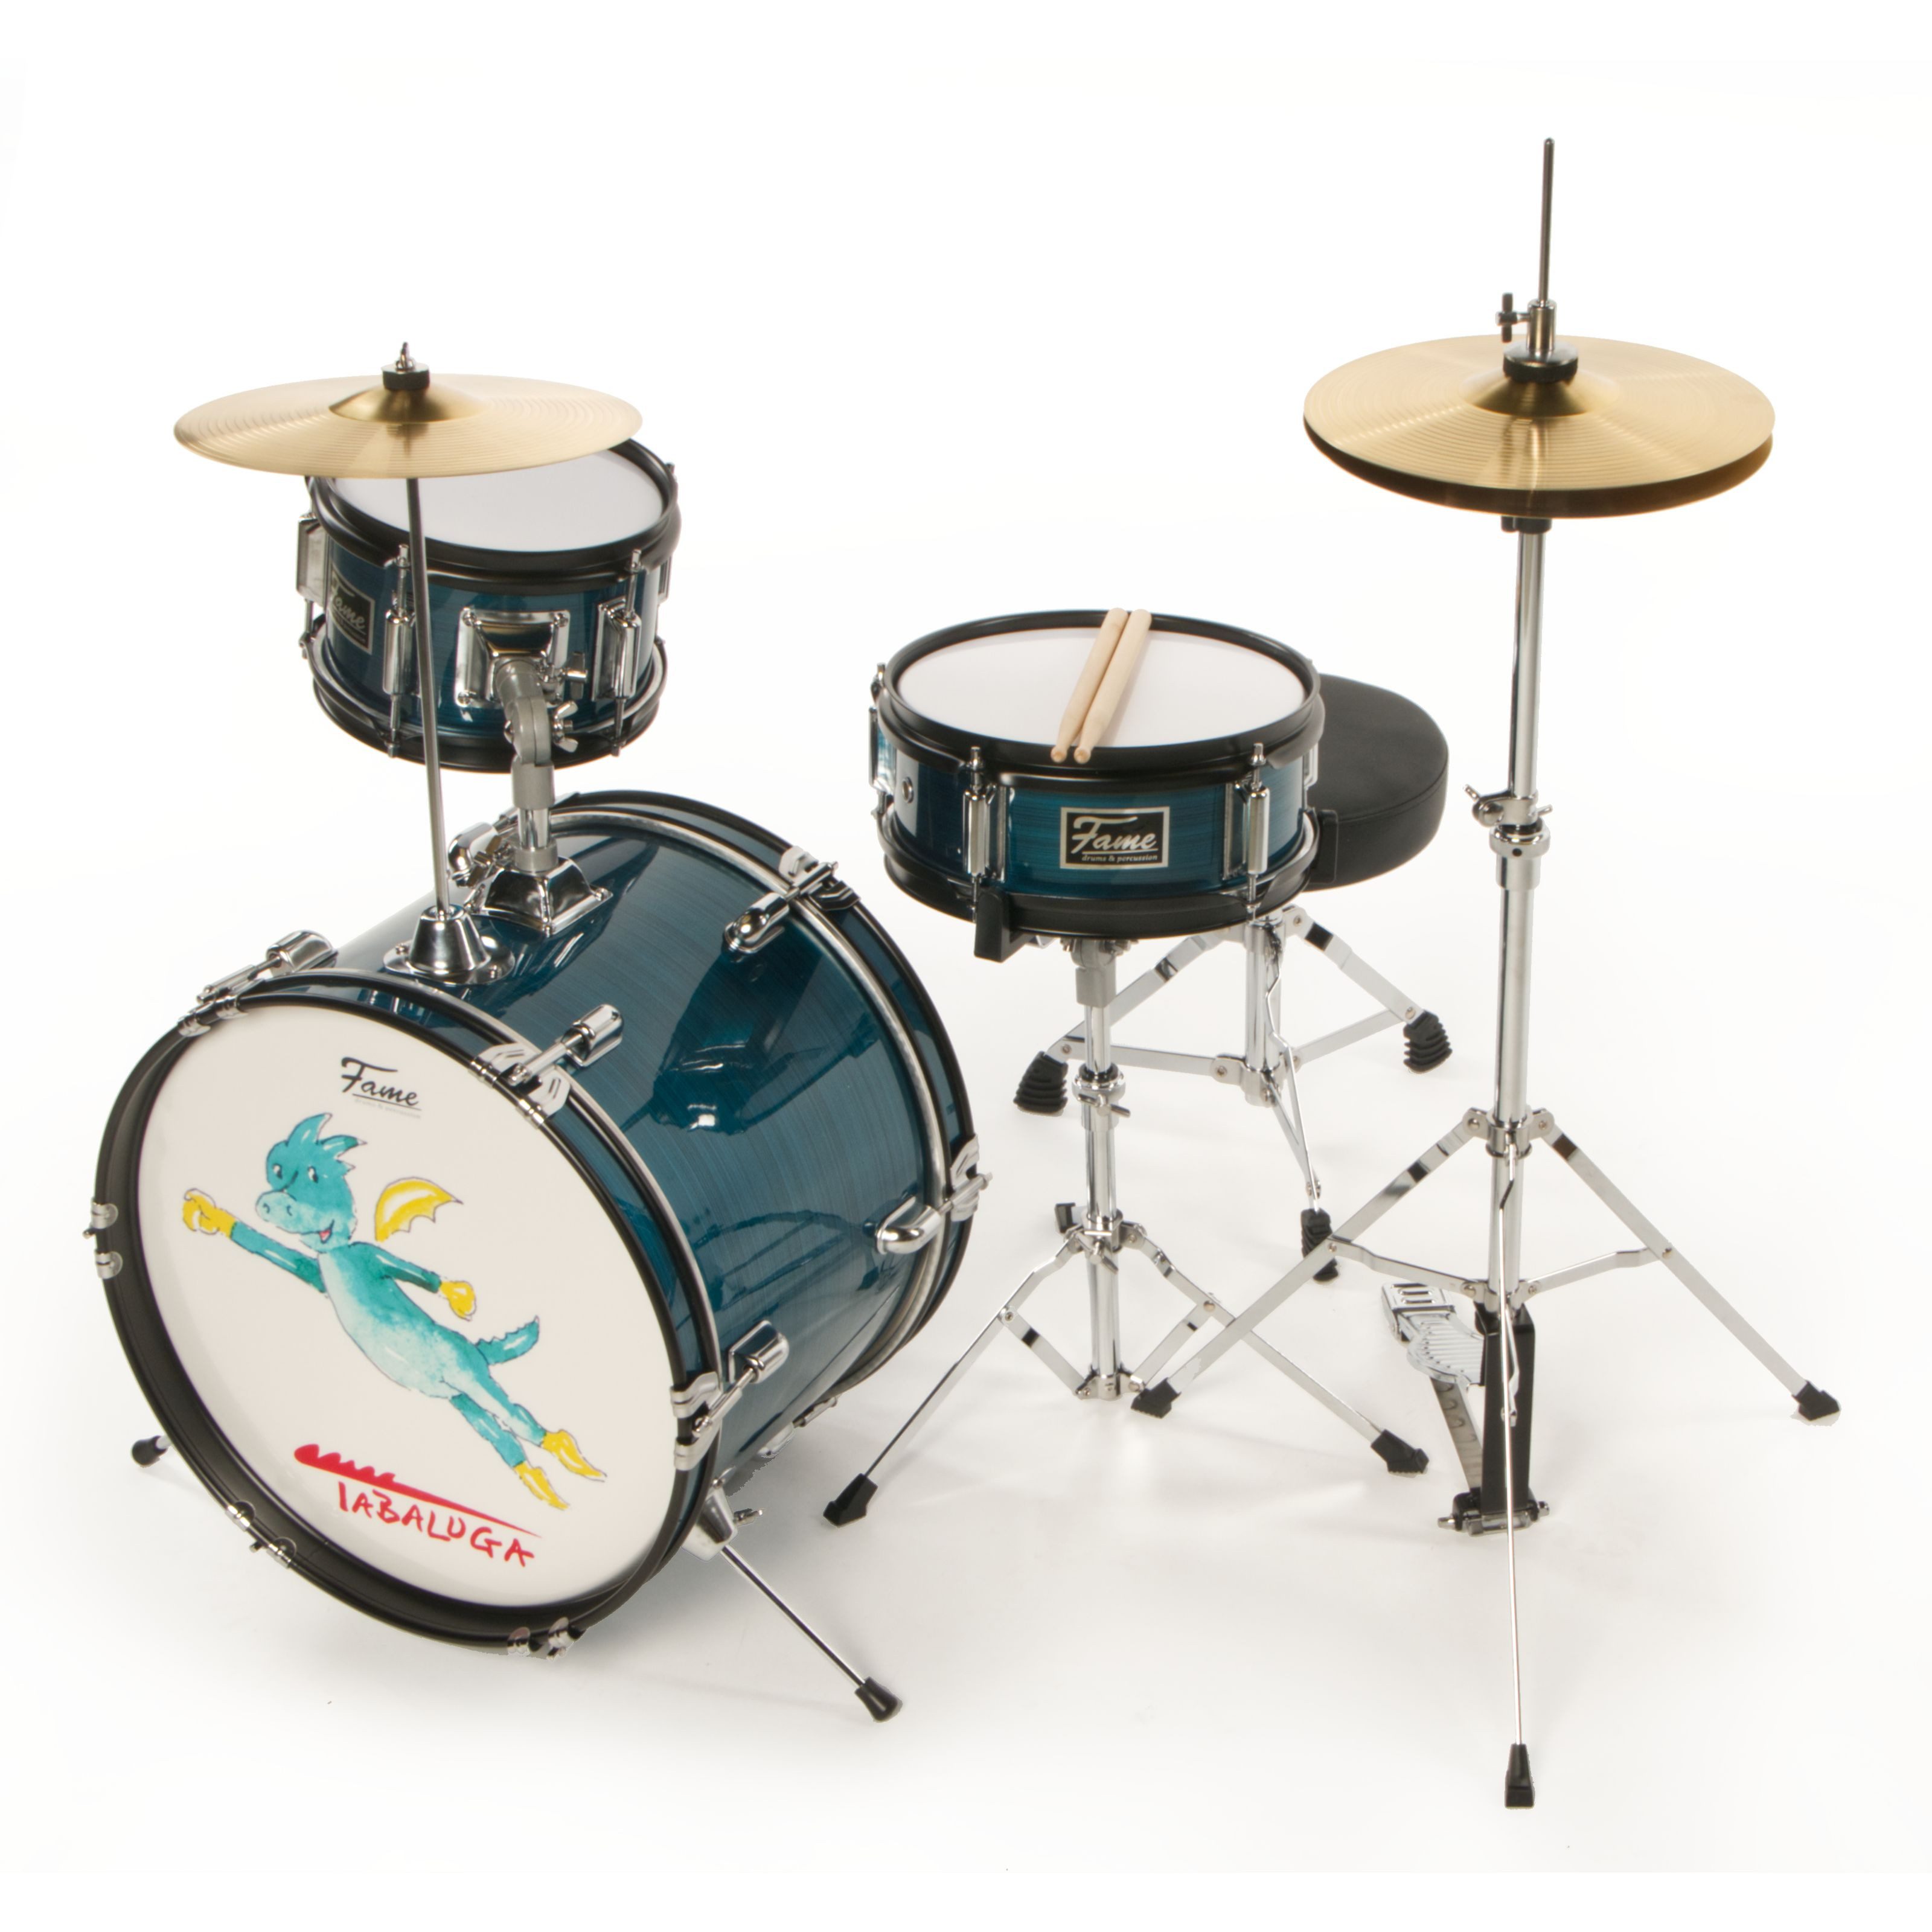 FAME Schlagzeug, 3 PC Junior Drumset Tabaluga Dark Blue - Drum-Set